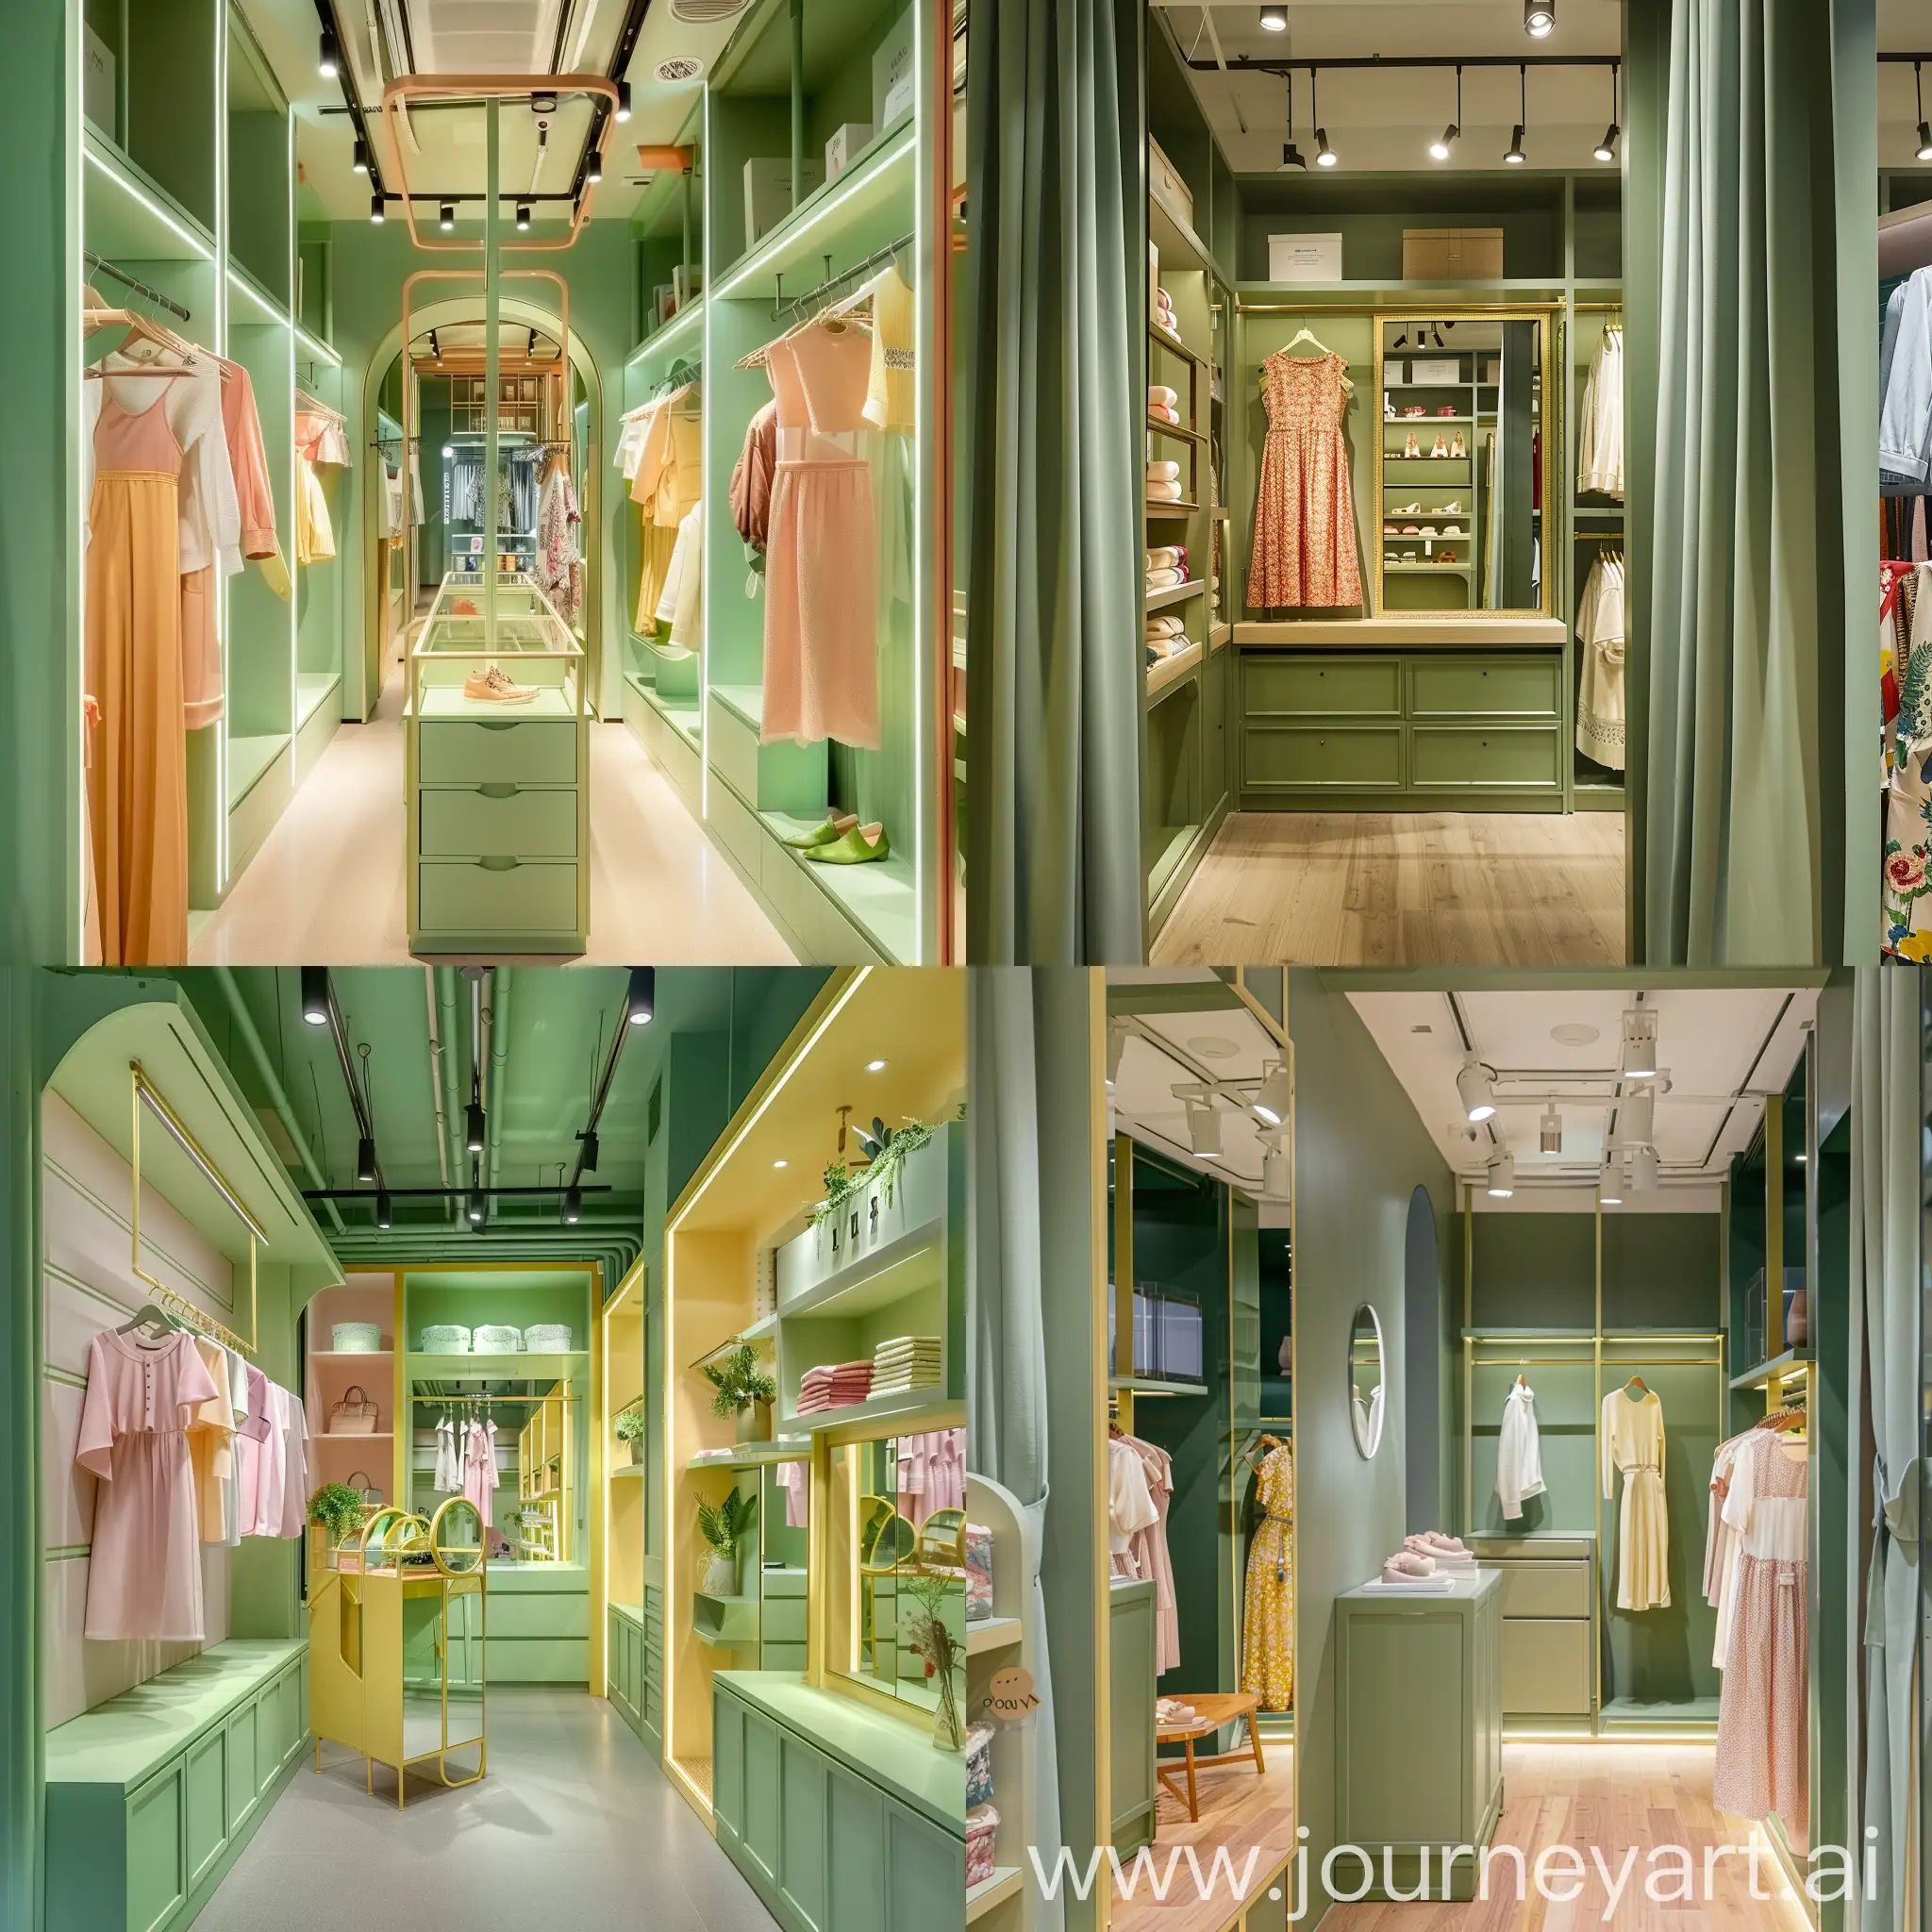 островок по продажи женской одежды где есть примерочная вешалки по низу полки зеркало оборудование для торговли женской одежды посреди прохода
зеленый цвет